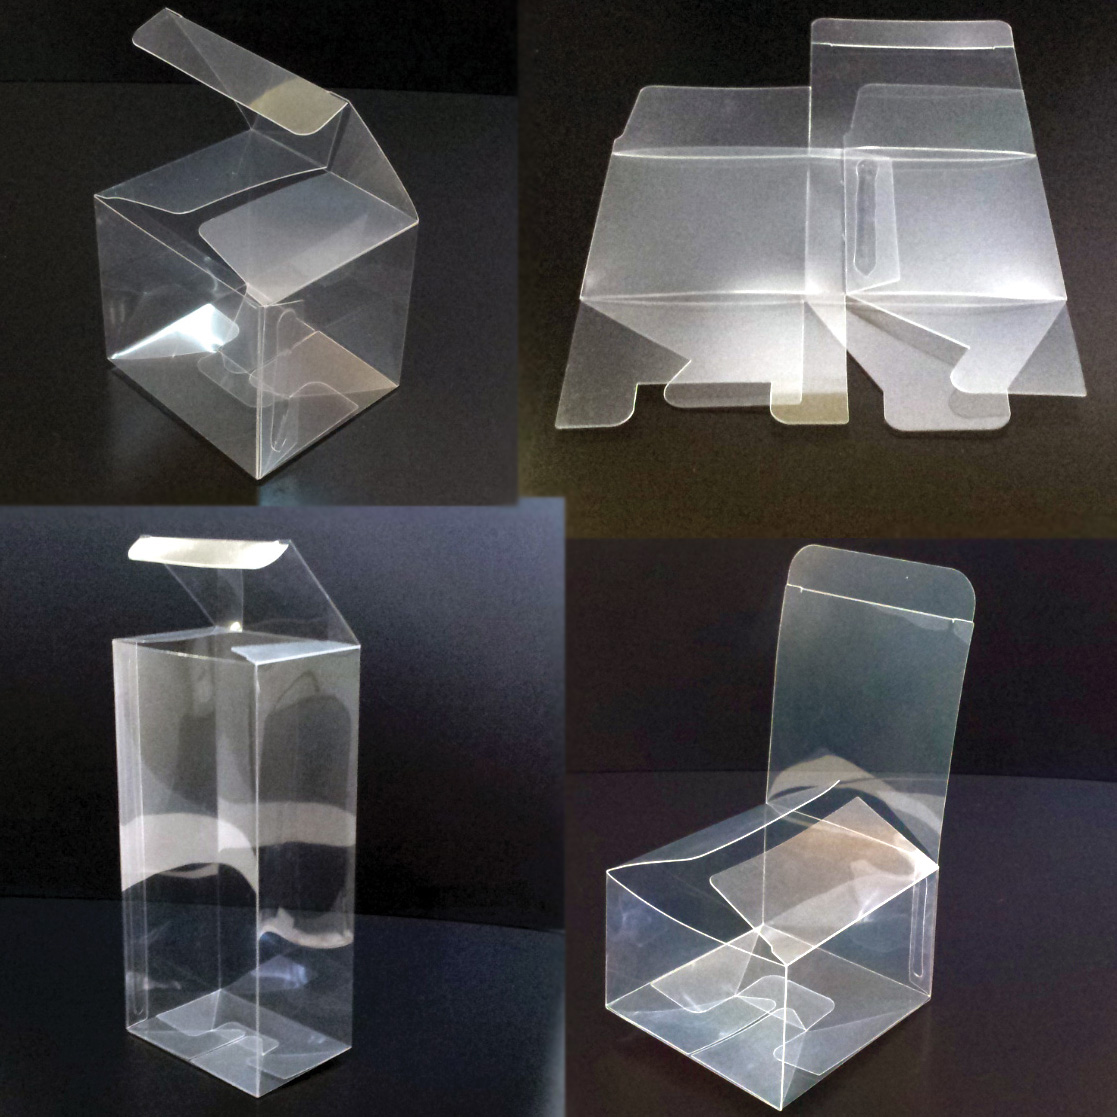 透明pet樹脂のパッケージは城東樹脂化工